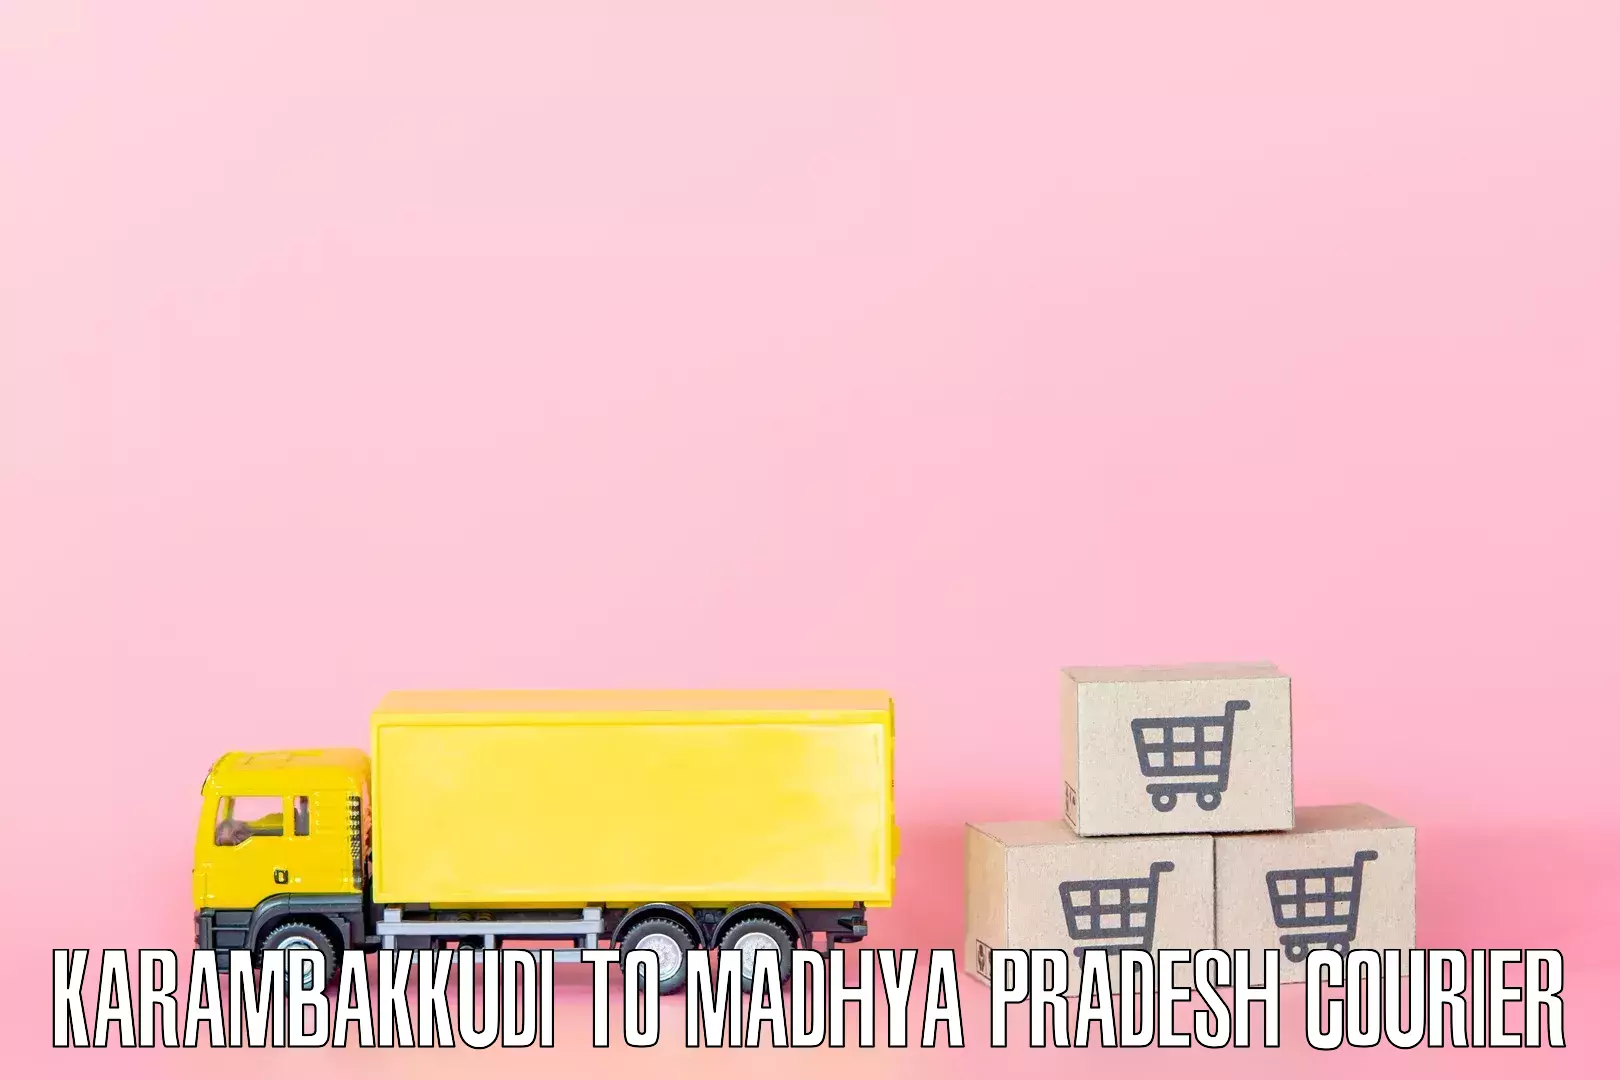 Reliable furniture transport Karambakkudi to Mandsaur